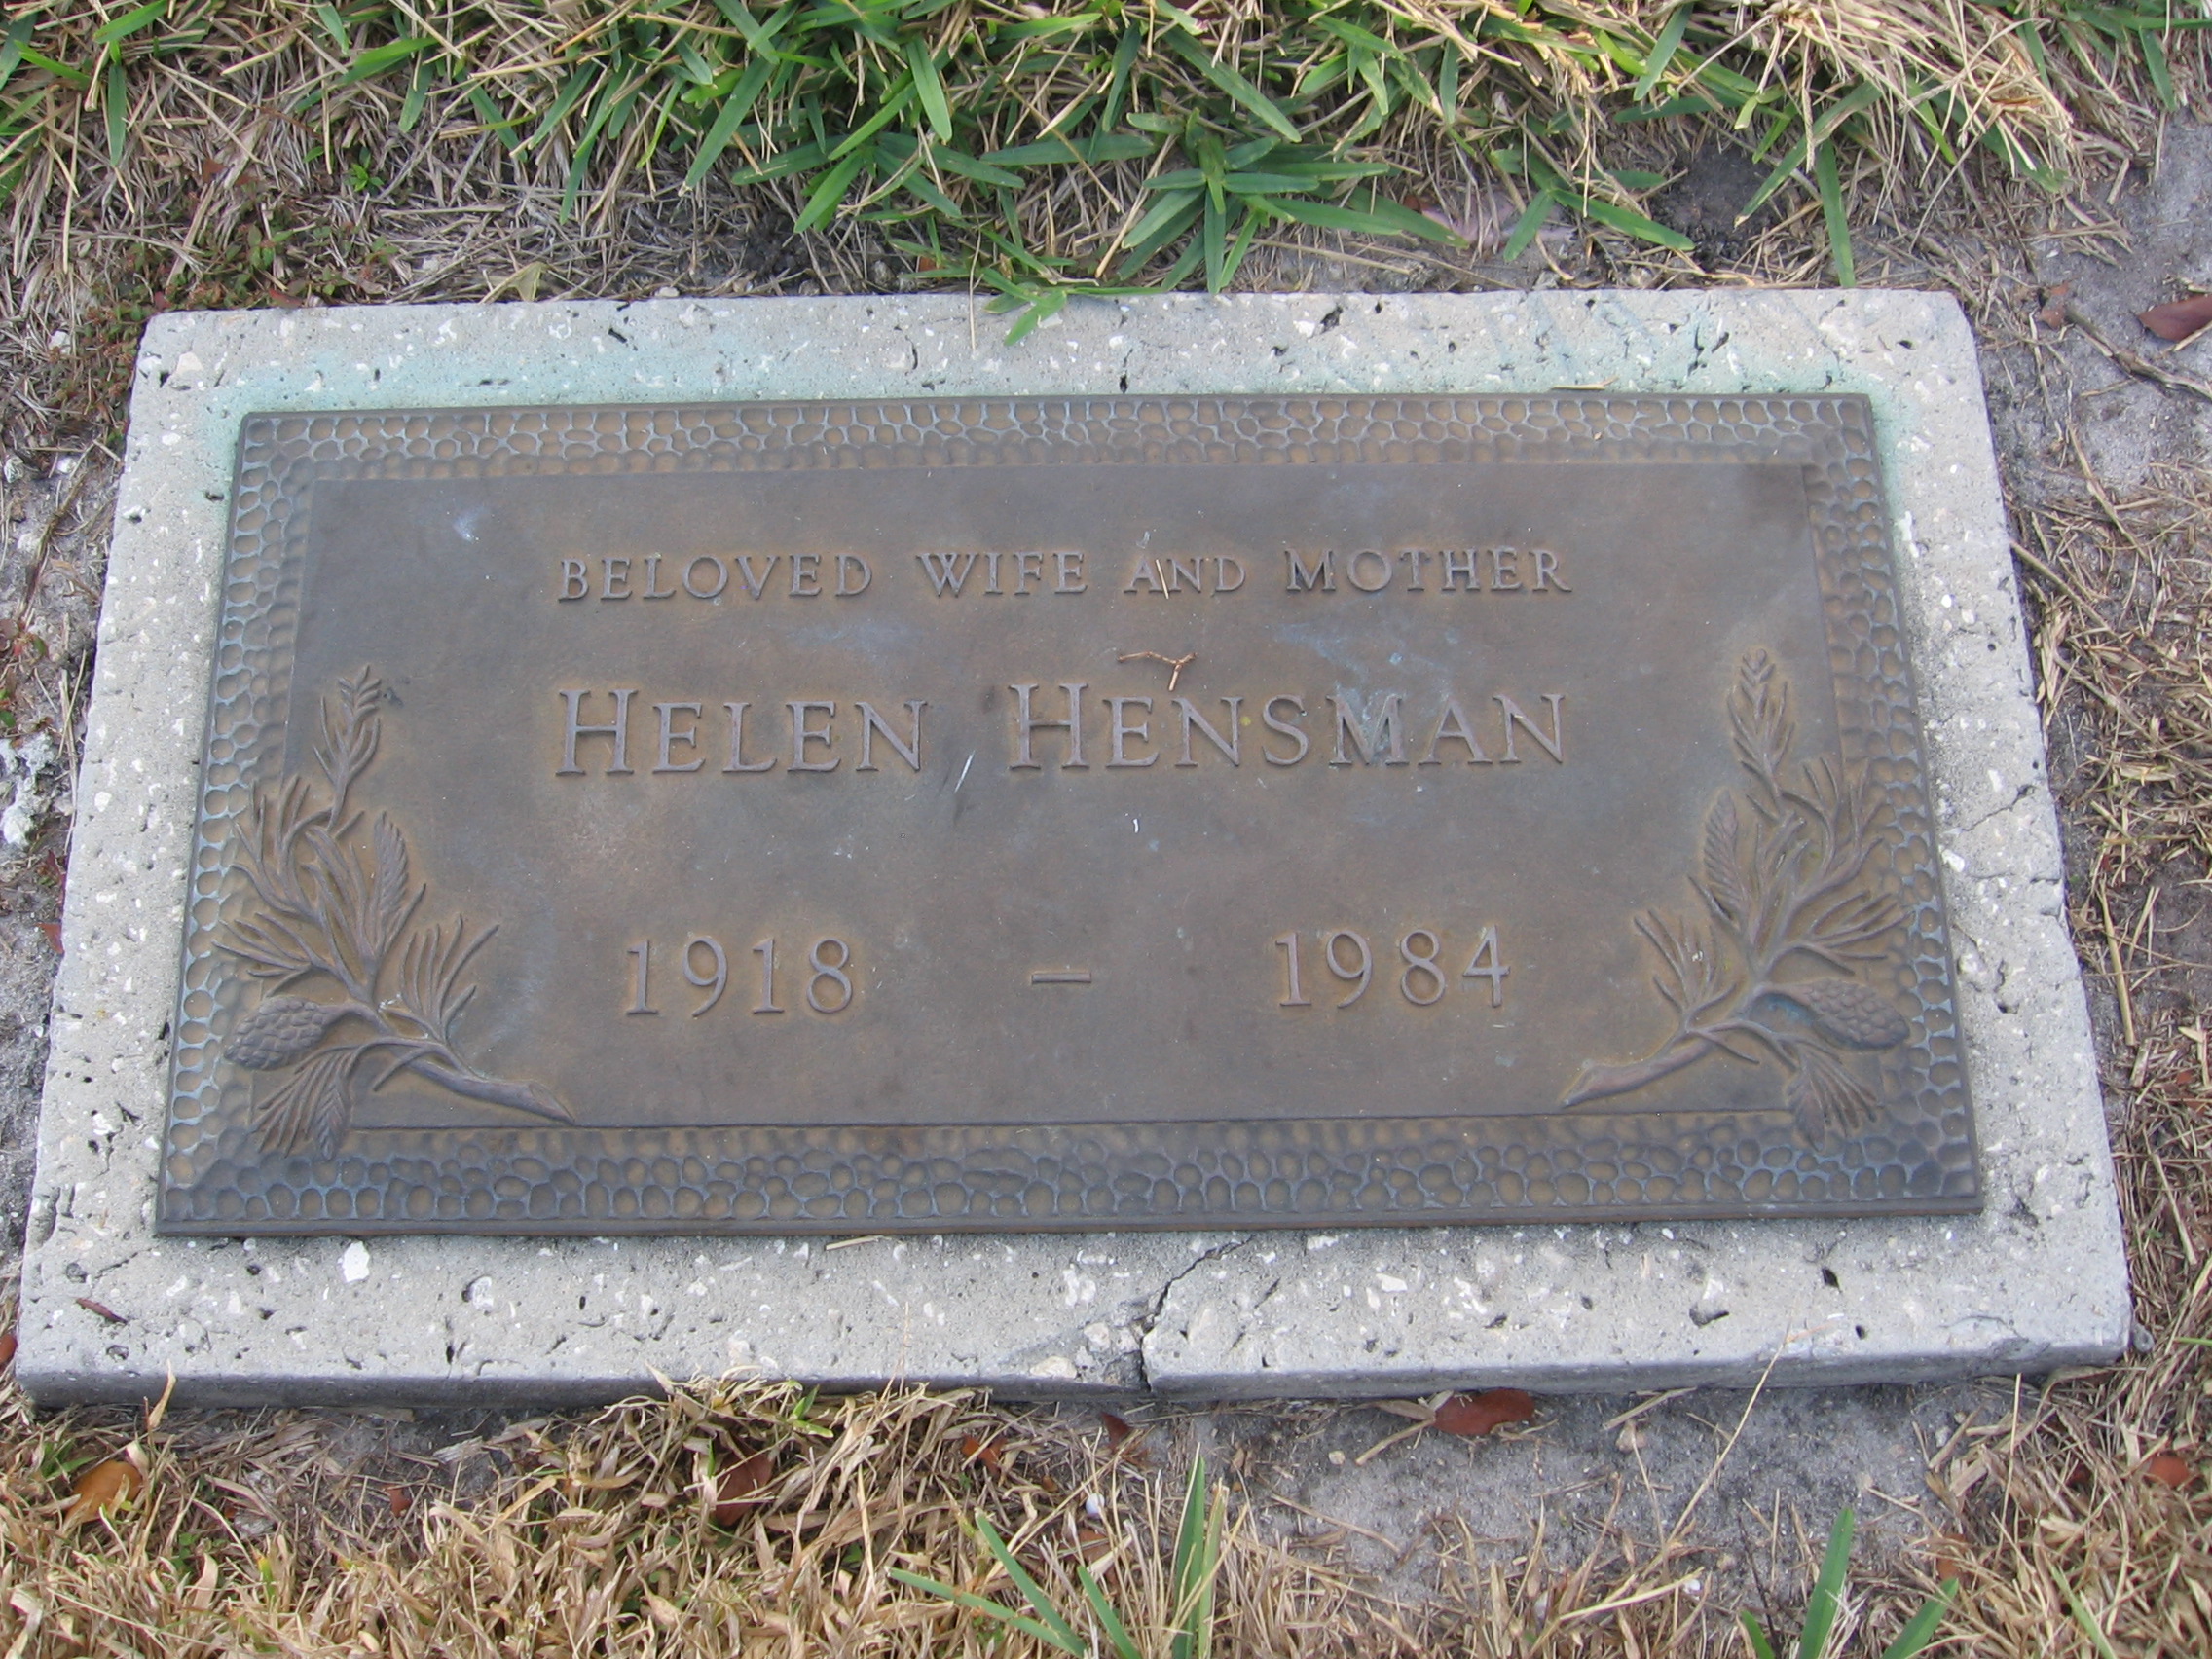 Helen Hensman